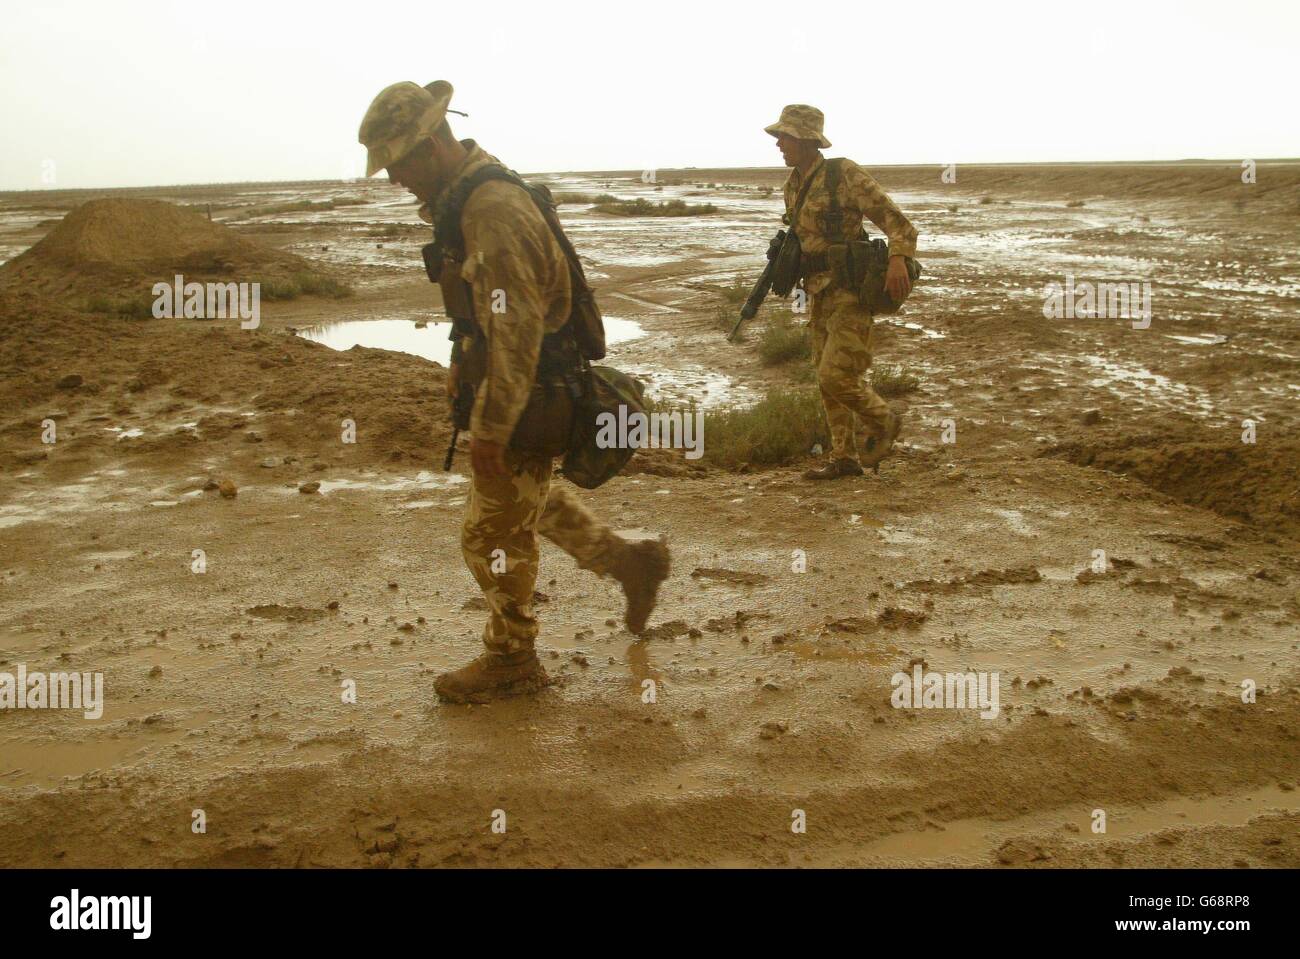 Mitglieder von 40 Royal Marines des Commando gruben nördlich der Halbinsel Al Faw, um Basra zu erreichen, nachdem starke Regenstürme die Wüste in Schlammebenen verwandelt hatten. Stockfoto